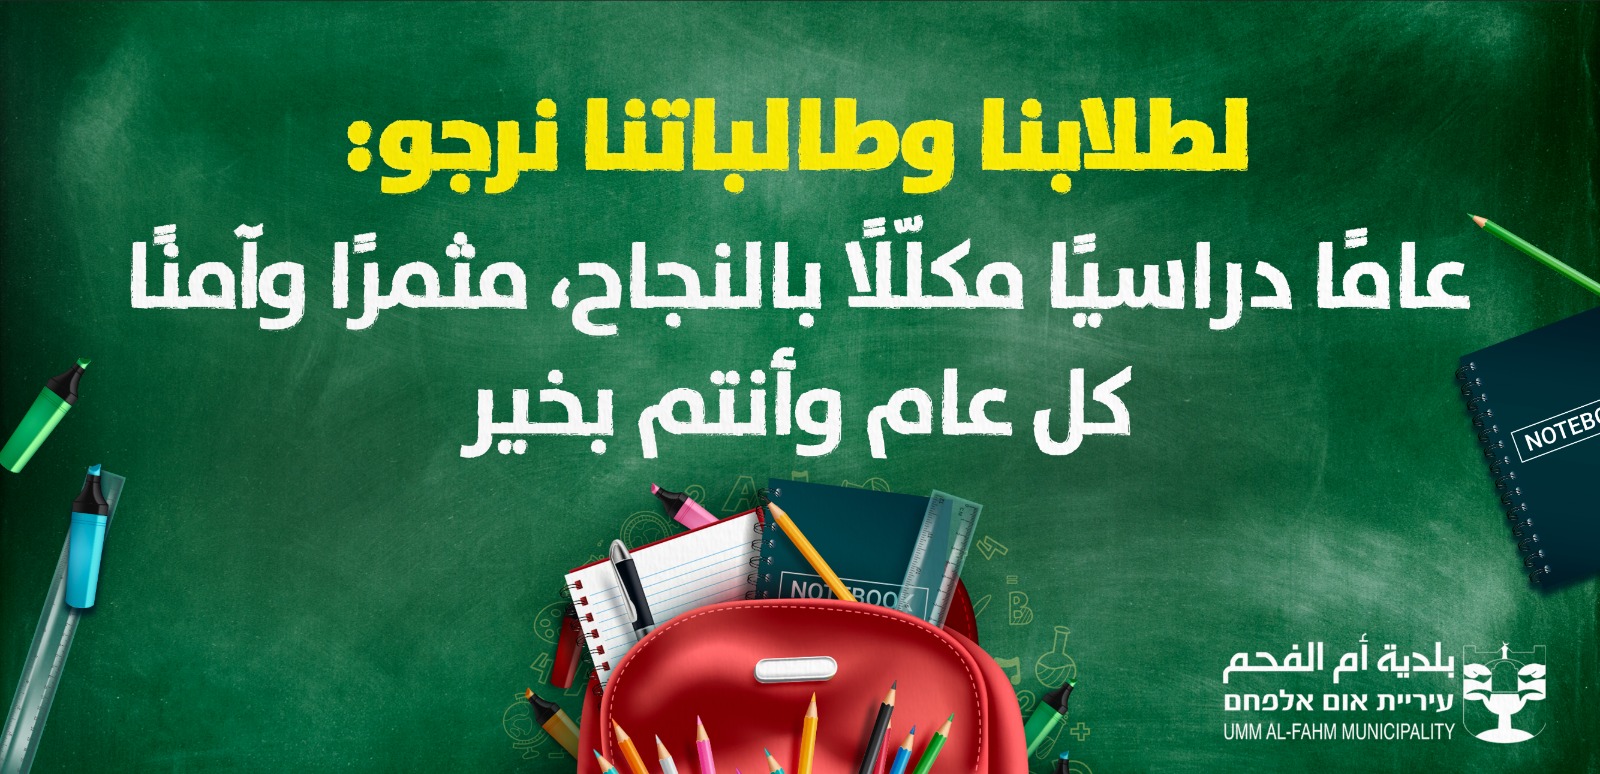 بلدية ام الفحم ترجو لطلابنا وطالباتنا عامًا دراسيًا جديدًا مكلّلًا بالنجاح، موفق